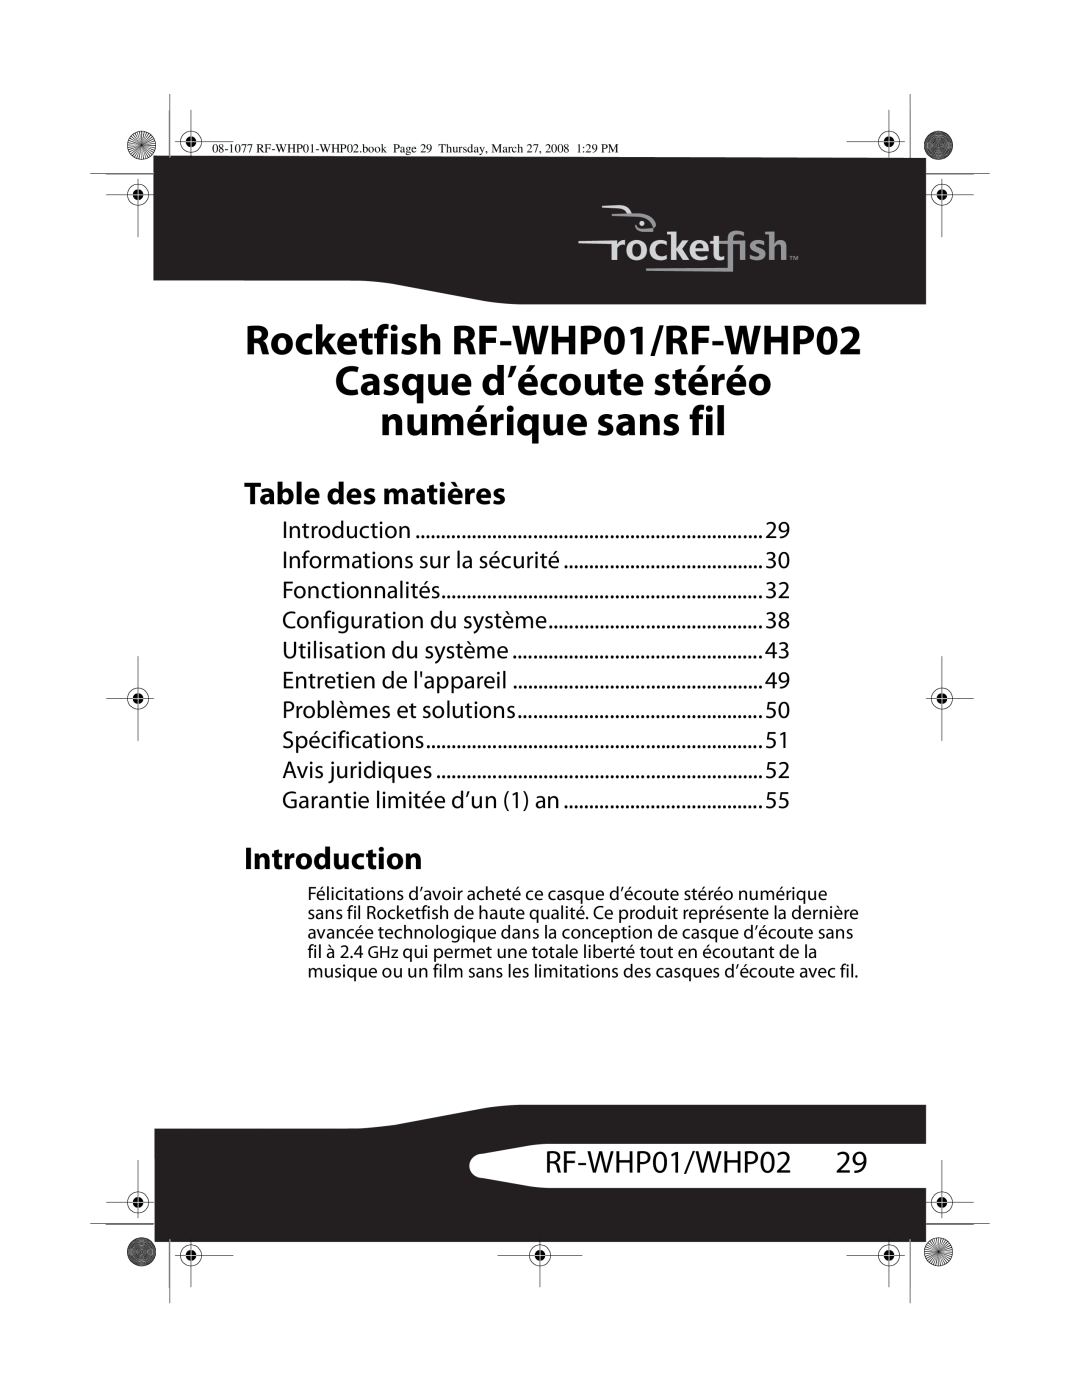 RocketFish RF-WHP02 manual Casque d’écoute stéréo numérique sans fil, Table des matières, RF-WHP01/WHP0229, Introduction 